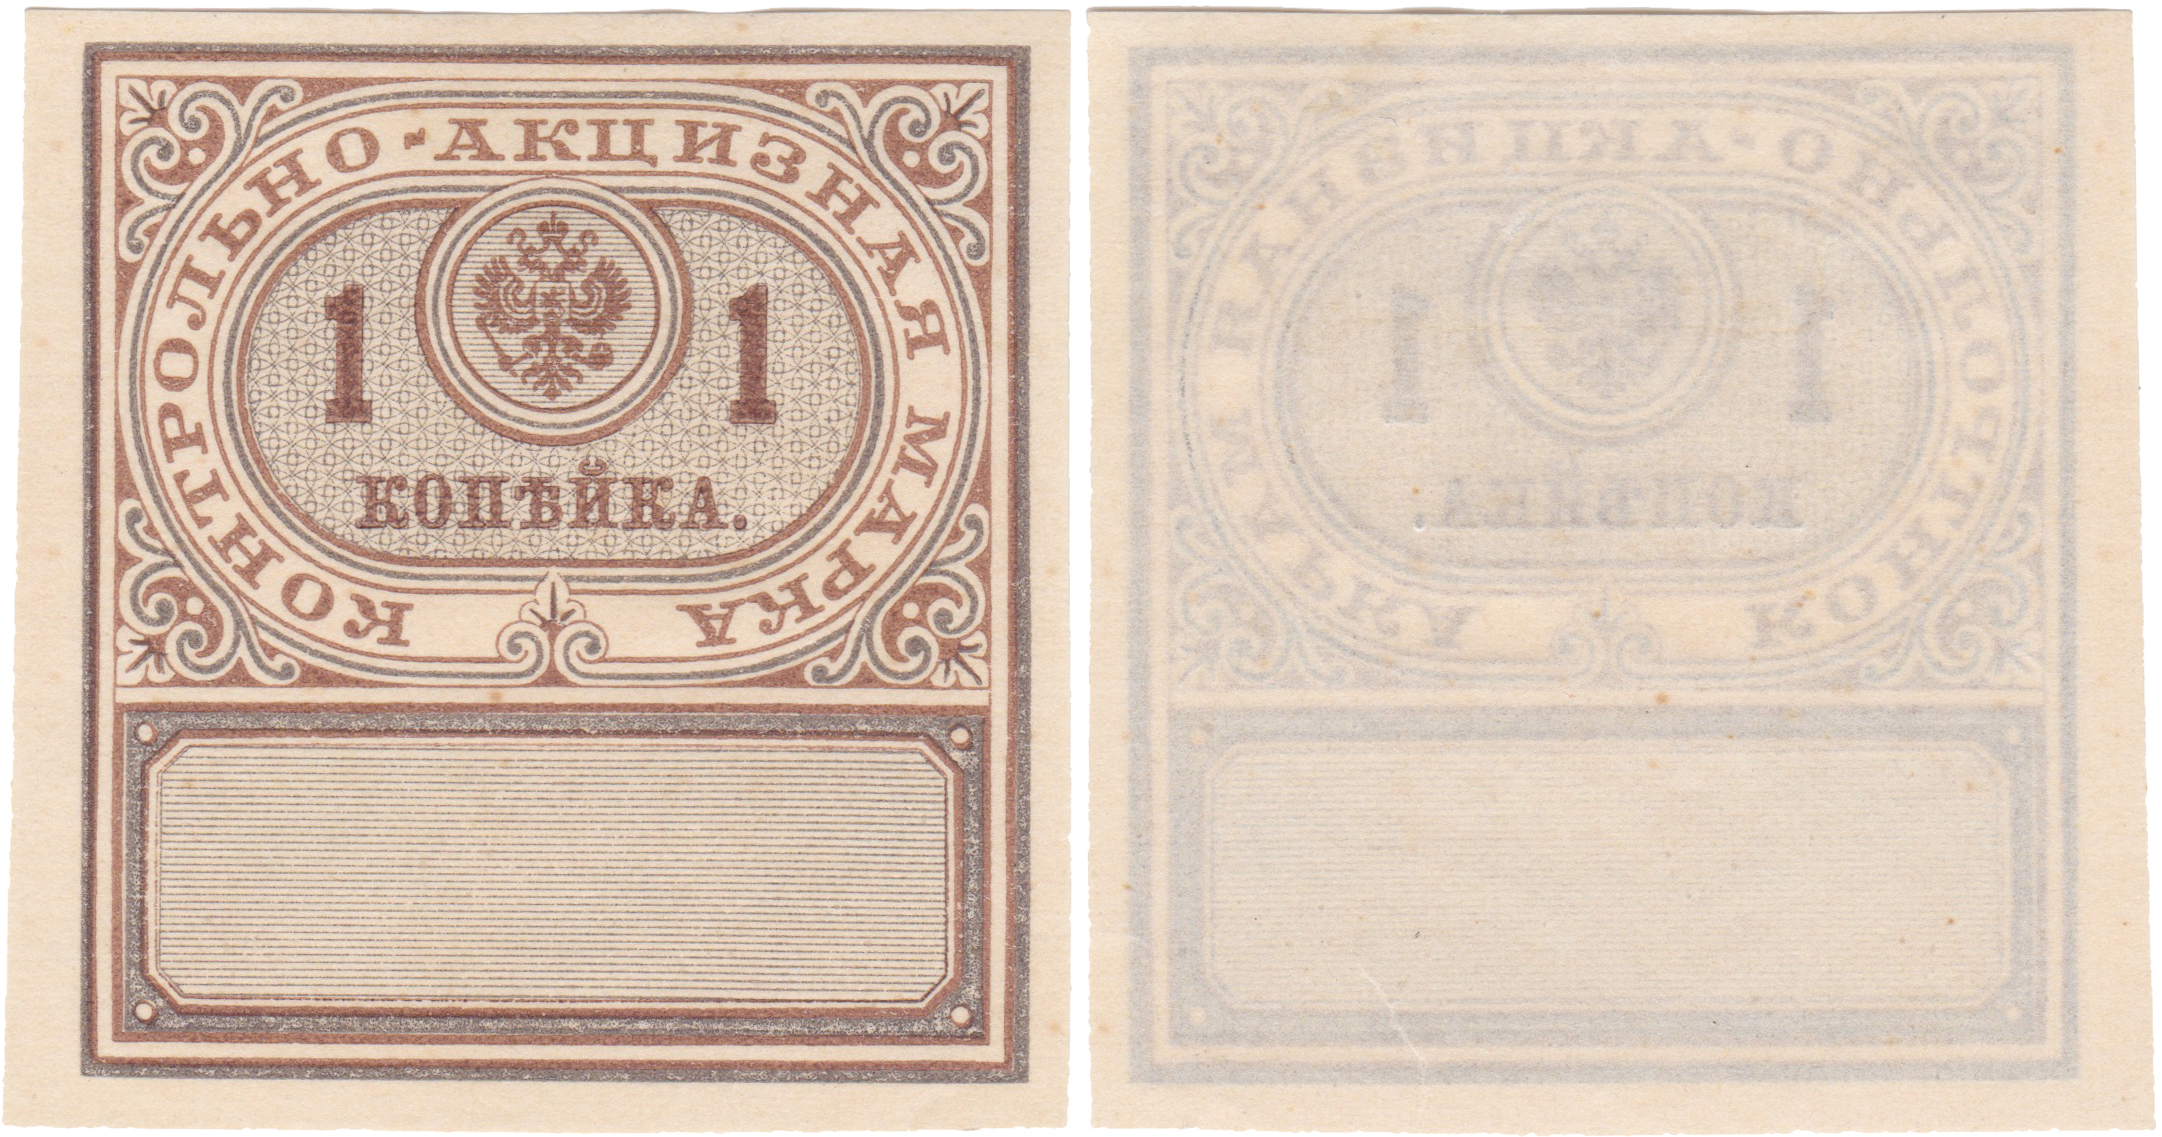 Контрольно - акцизная марка 1 Копейка на Алкоголь 1890 год. Министерство финансов Российской империи